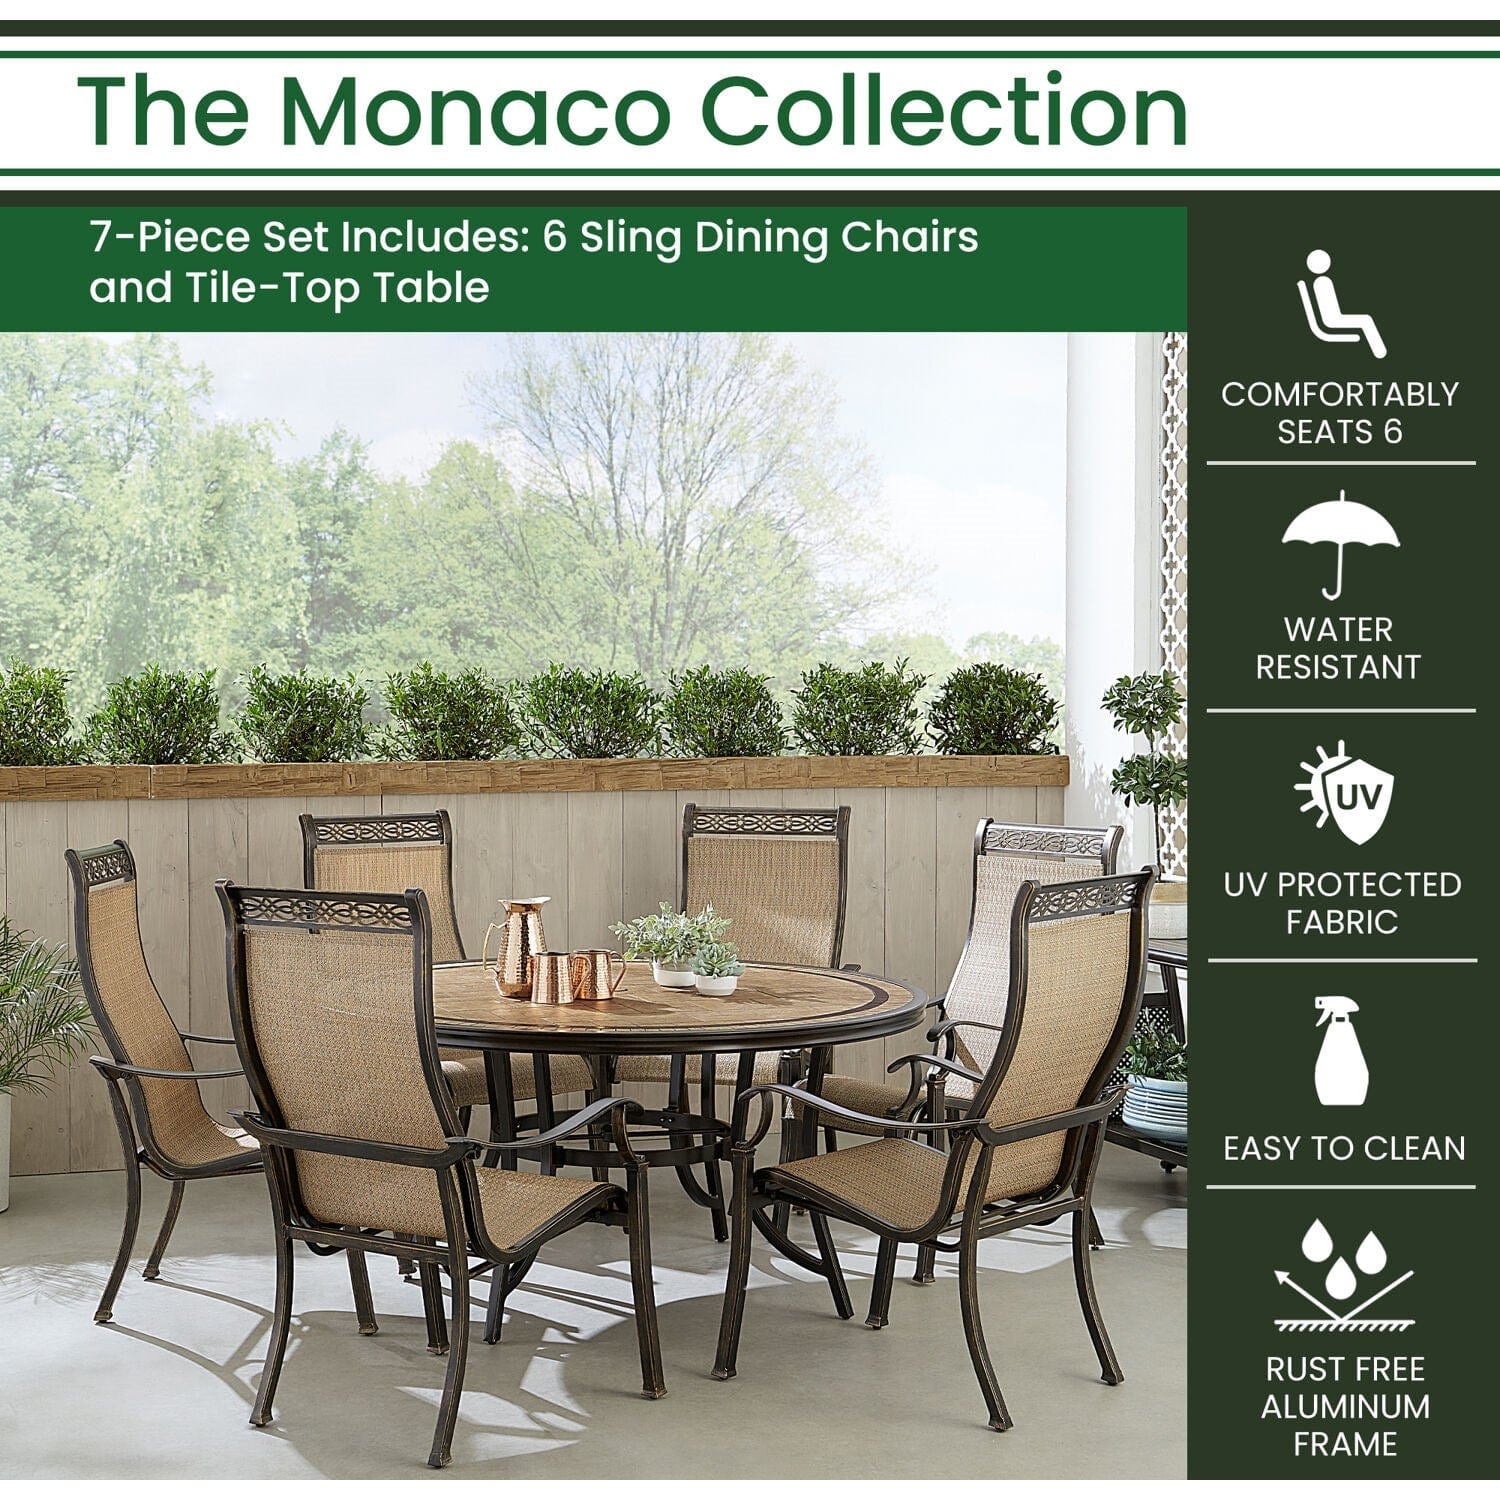 Hanover Outdoor Dining Set Hanover Monaco 7-Piece Outdoor Dining Set with 6 Sling Dining Chairs and a 60-in. Tile-Top Table | MONDN7PCRDTL